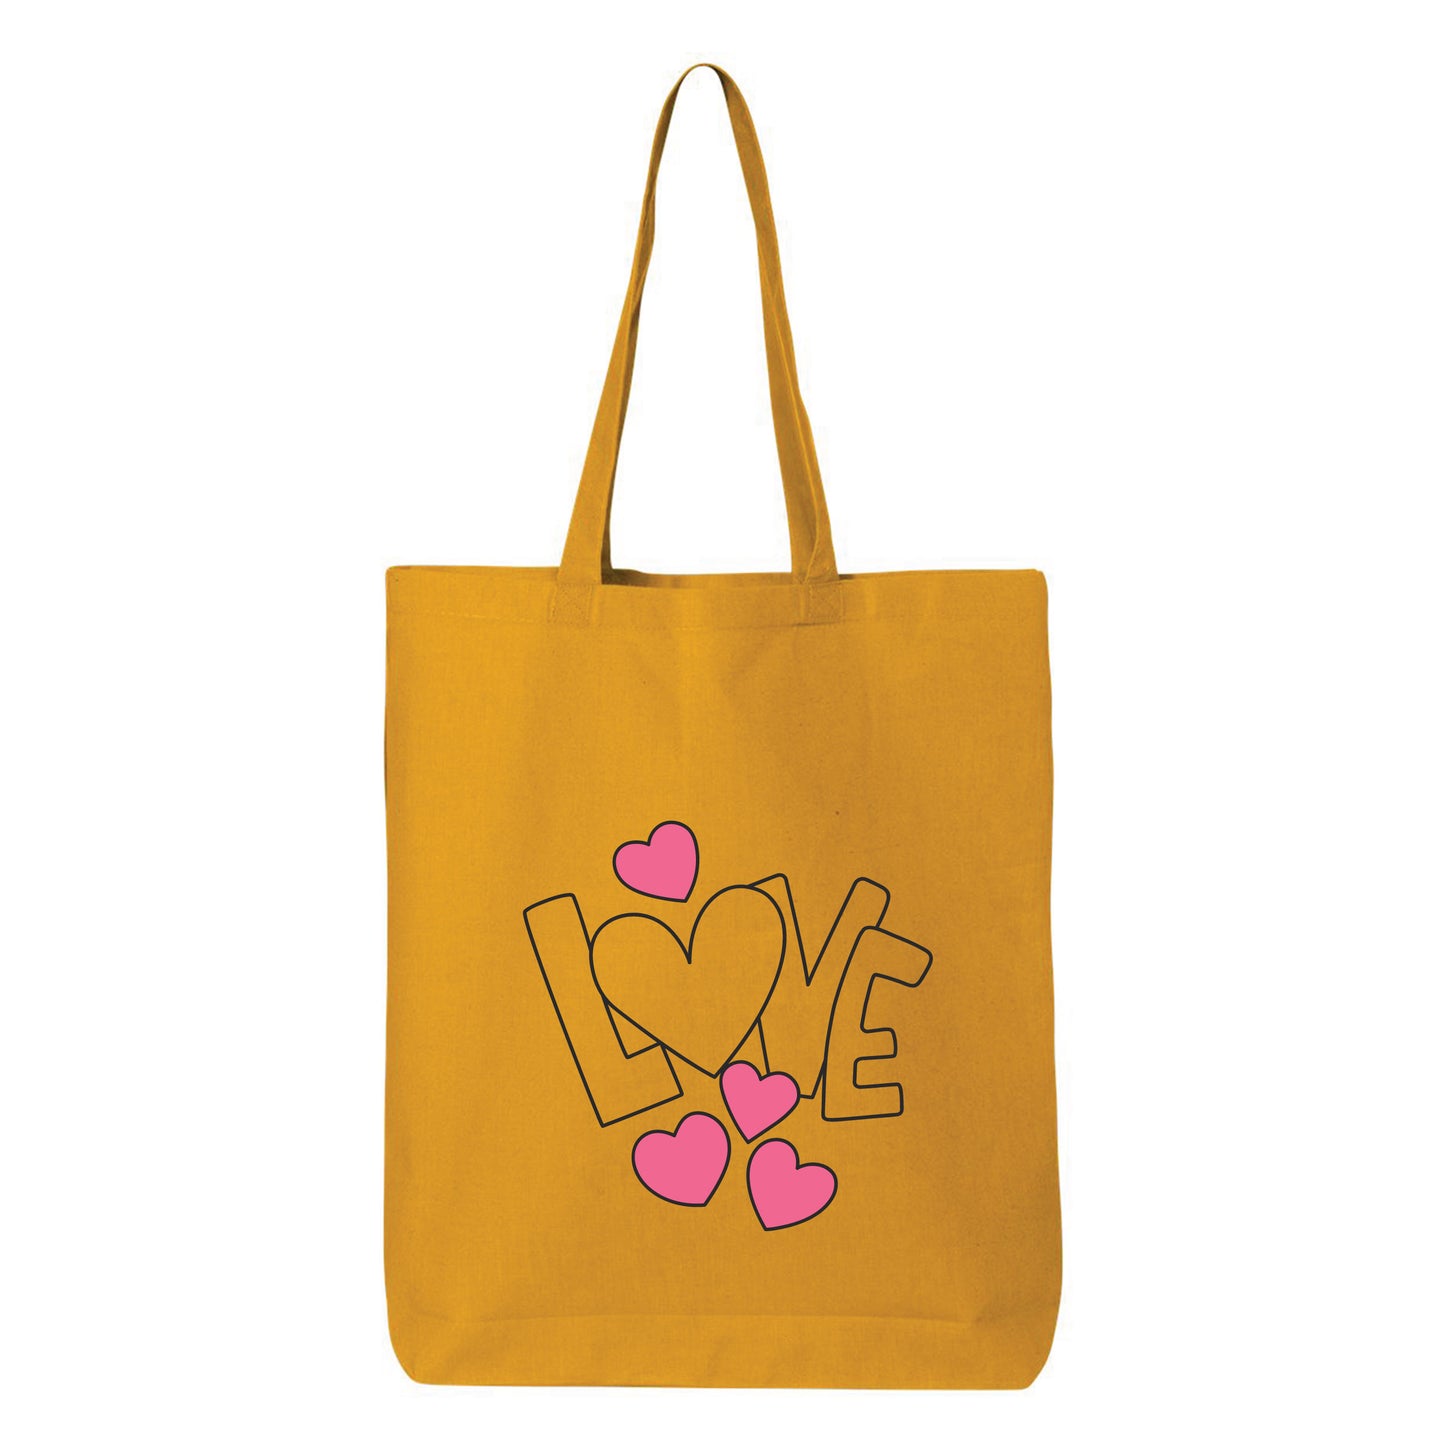 
                  
                    Love Tote Bag
                  
                